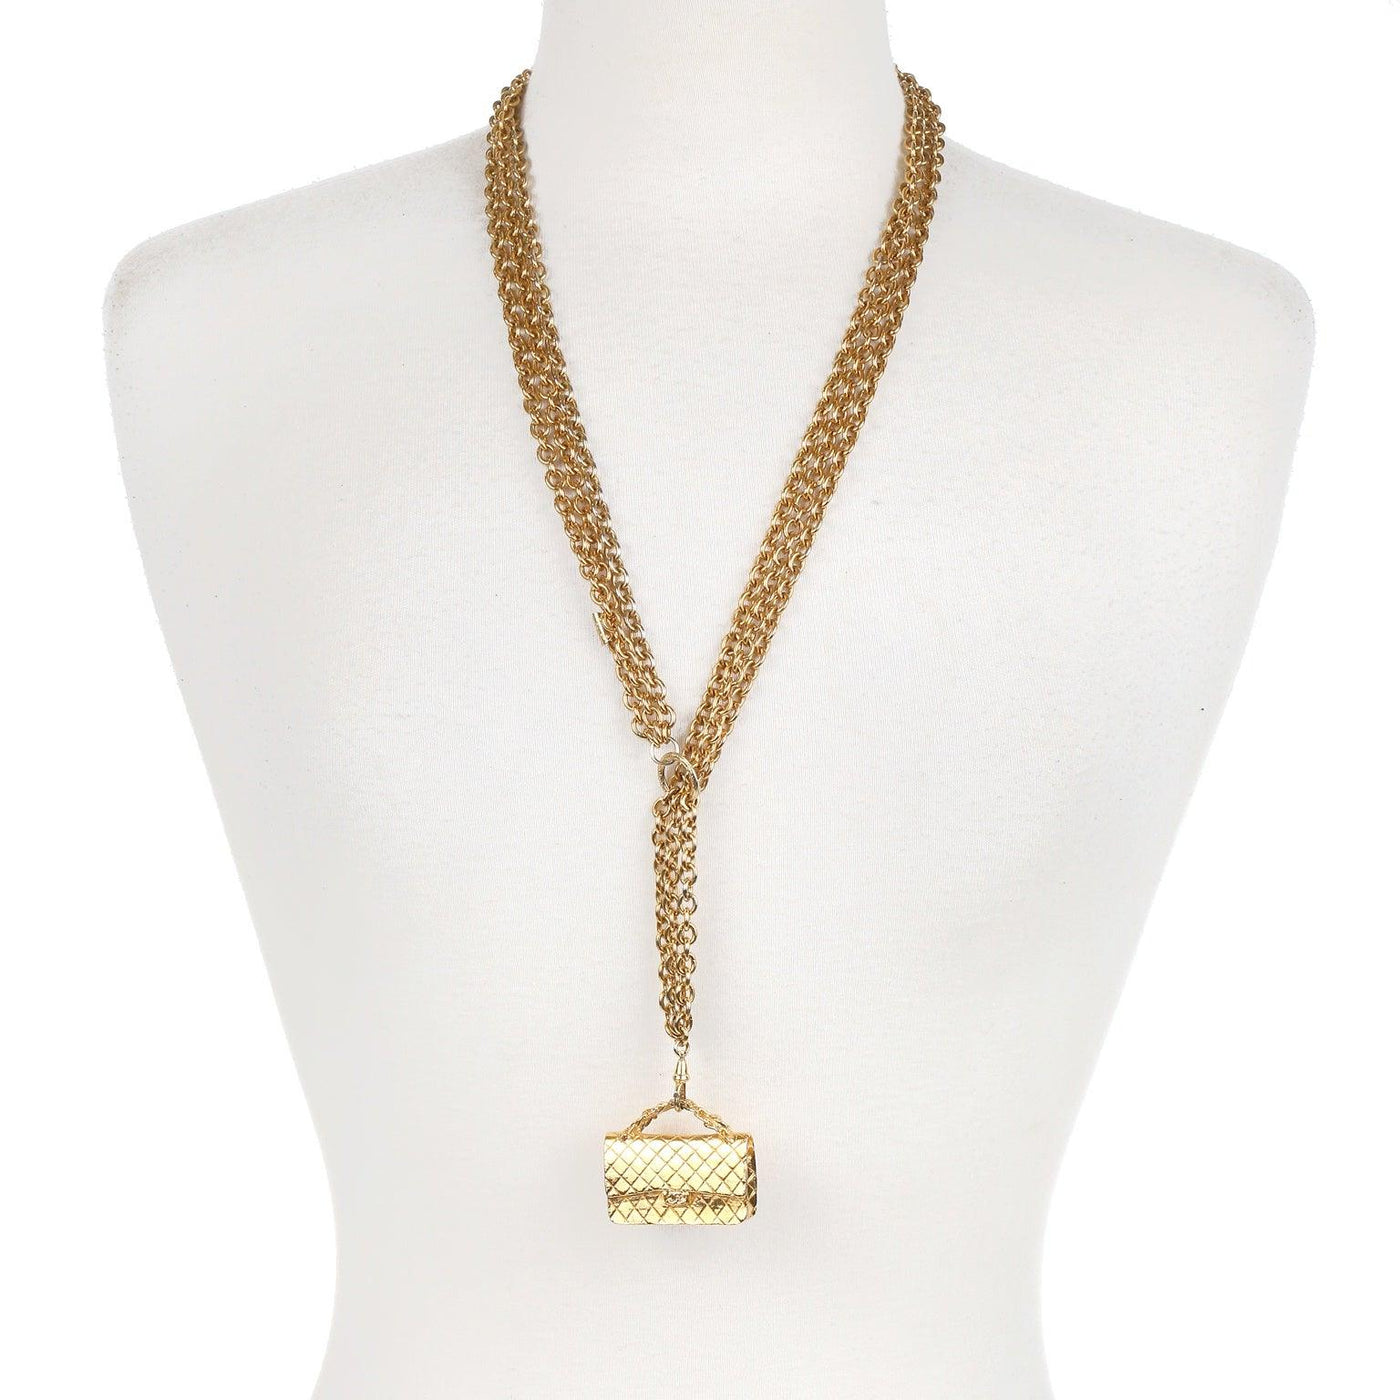 Chanel Gold Flap Bag Sautoir Triple Chain Necklace - Only Authentics